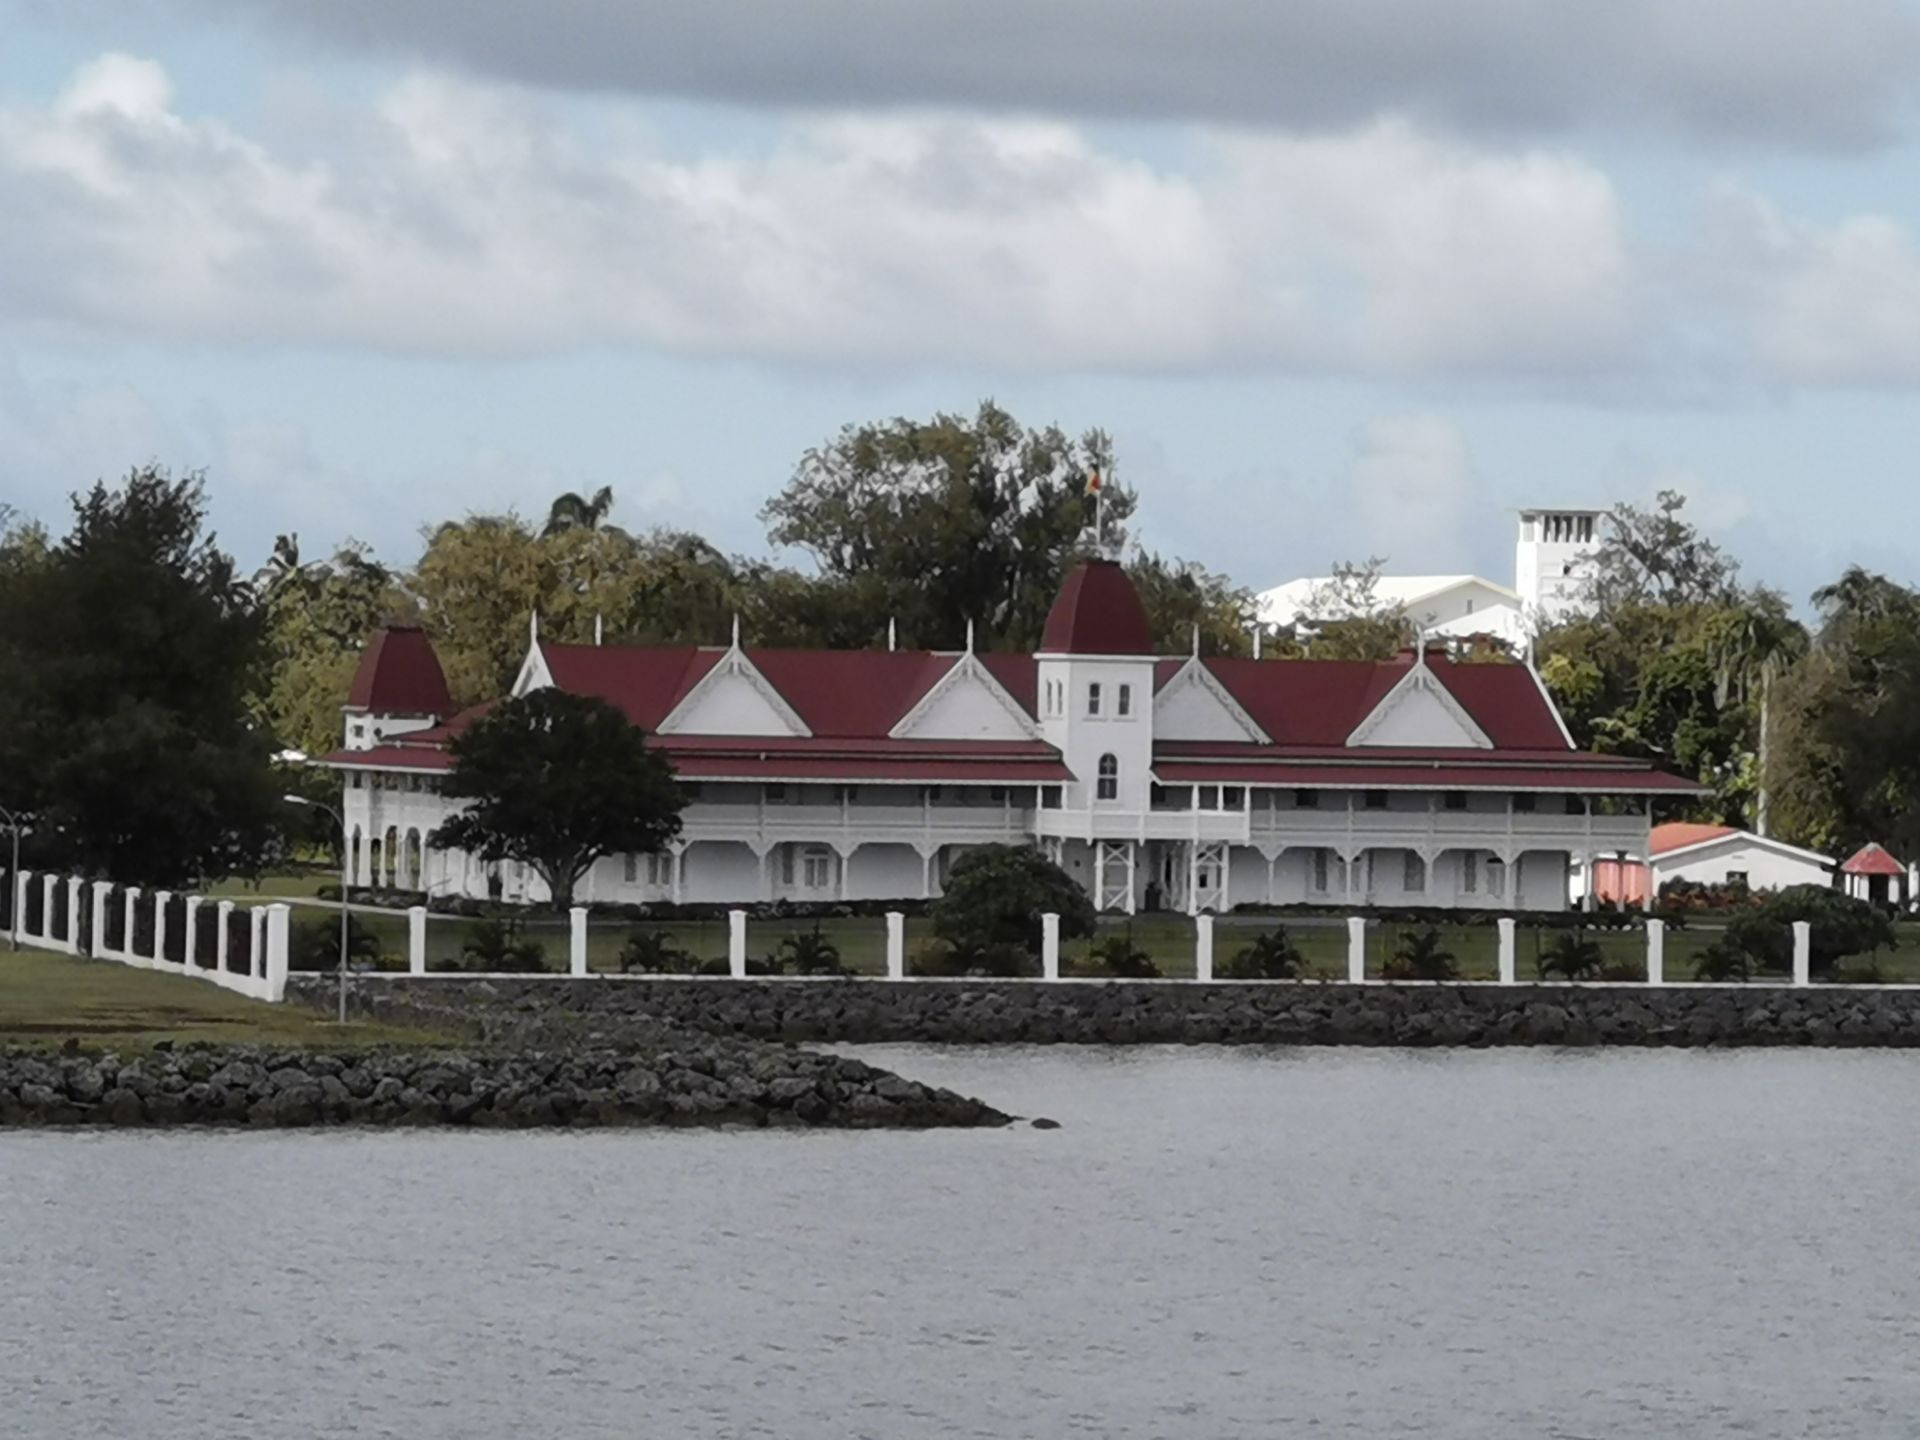 汤加皇宫就在汤加首都努克阿洛法港口的旁边,在邮轮进港时最先看到的